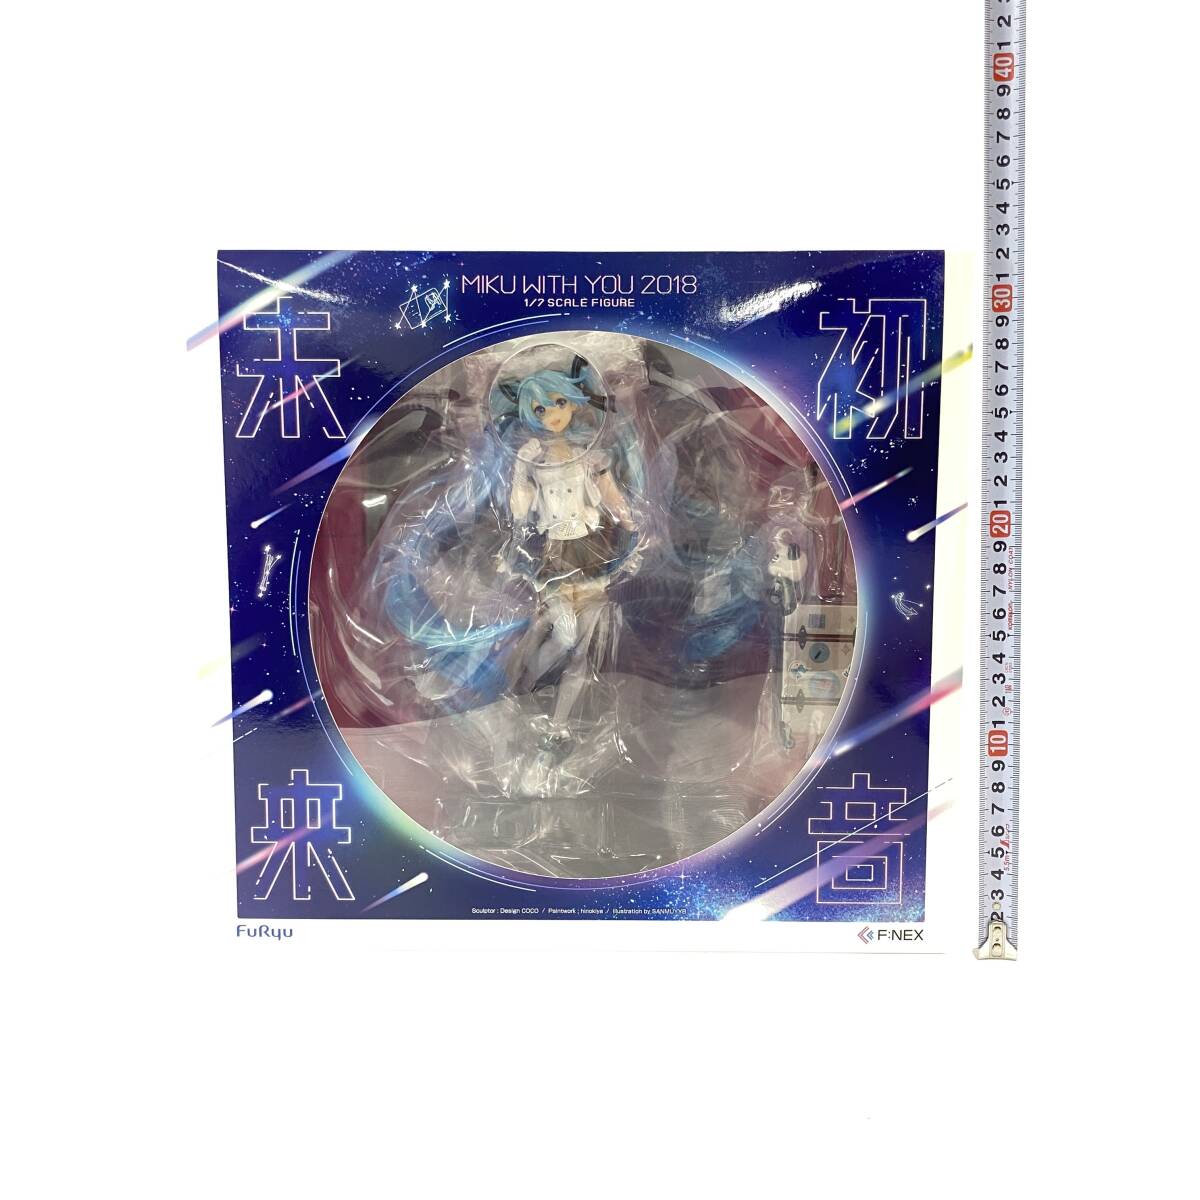 2404601-022 FuRyu F:NEX Hatsune Miku первый звук будущее MIKU WITH TOU 2018 1/8 фигурка нераспечатанный 